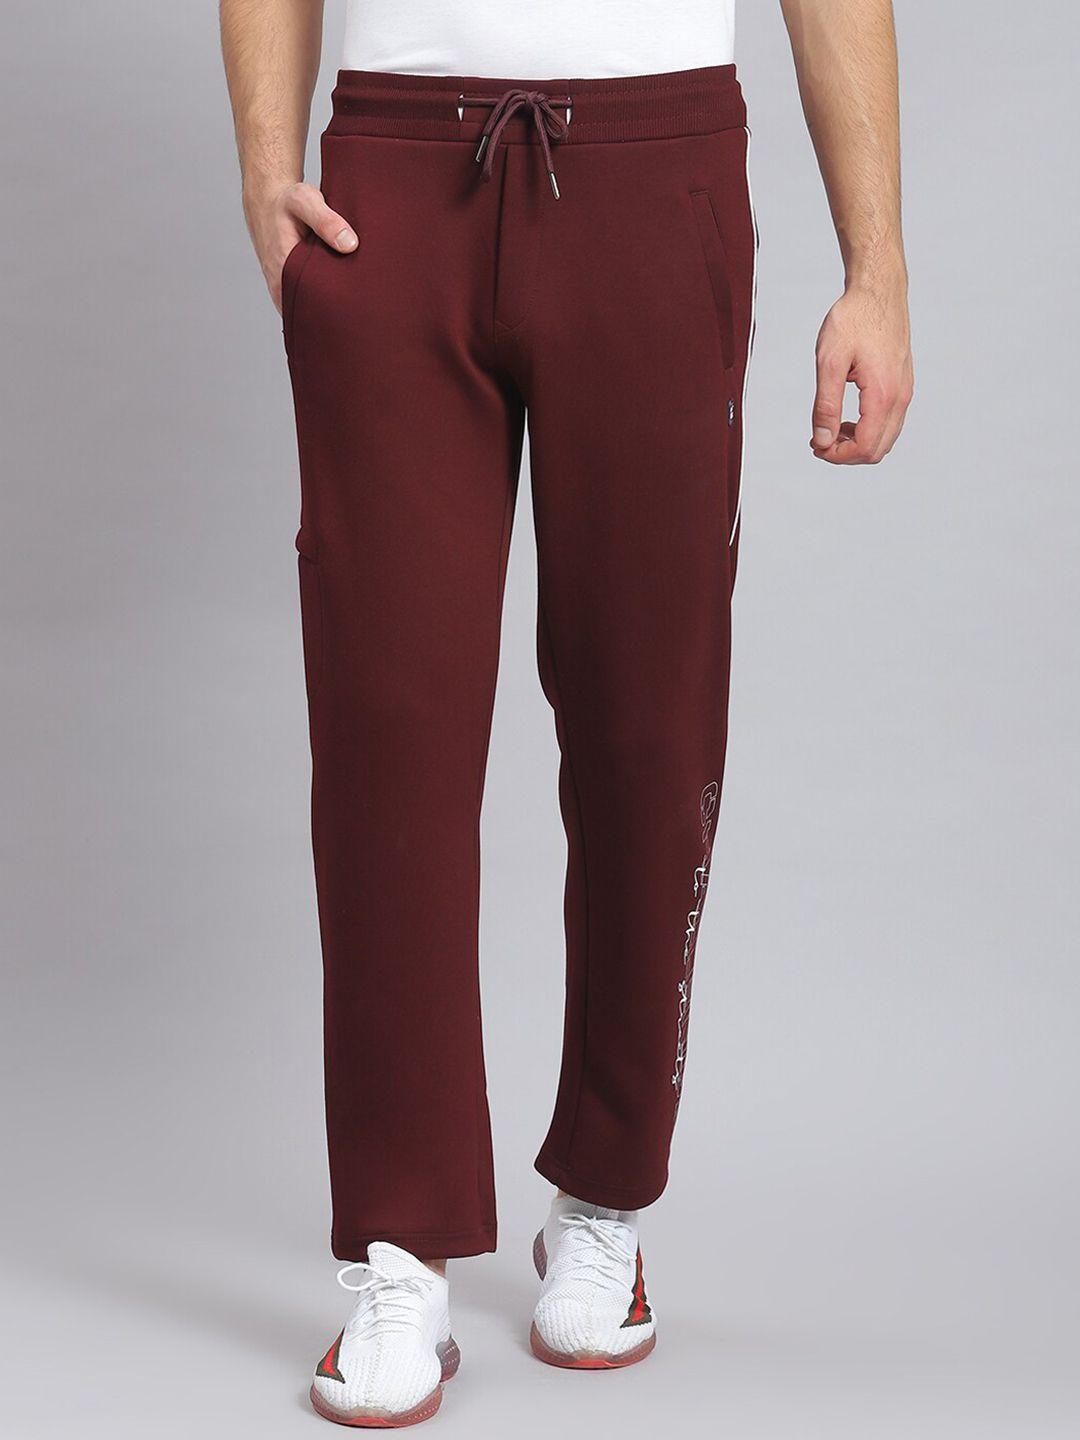 monte-carlo-men-mid-rise-cotton-track-pants